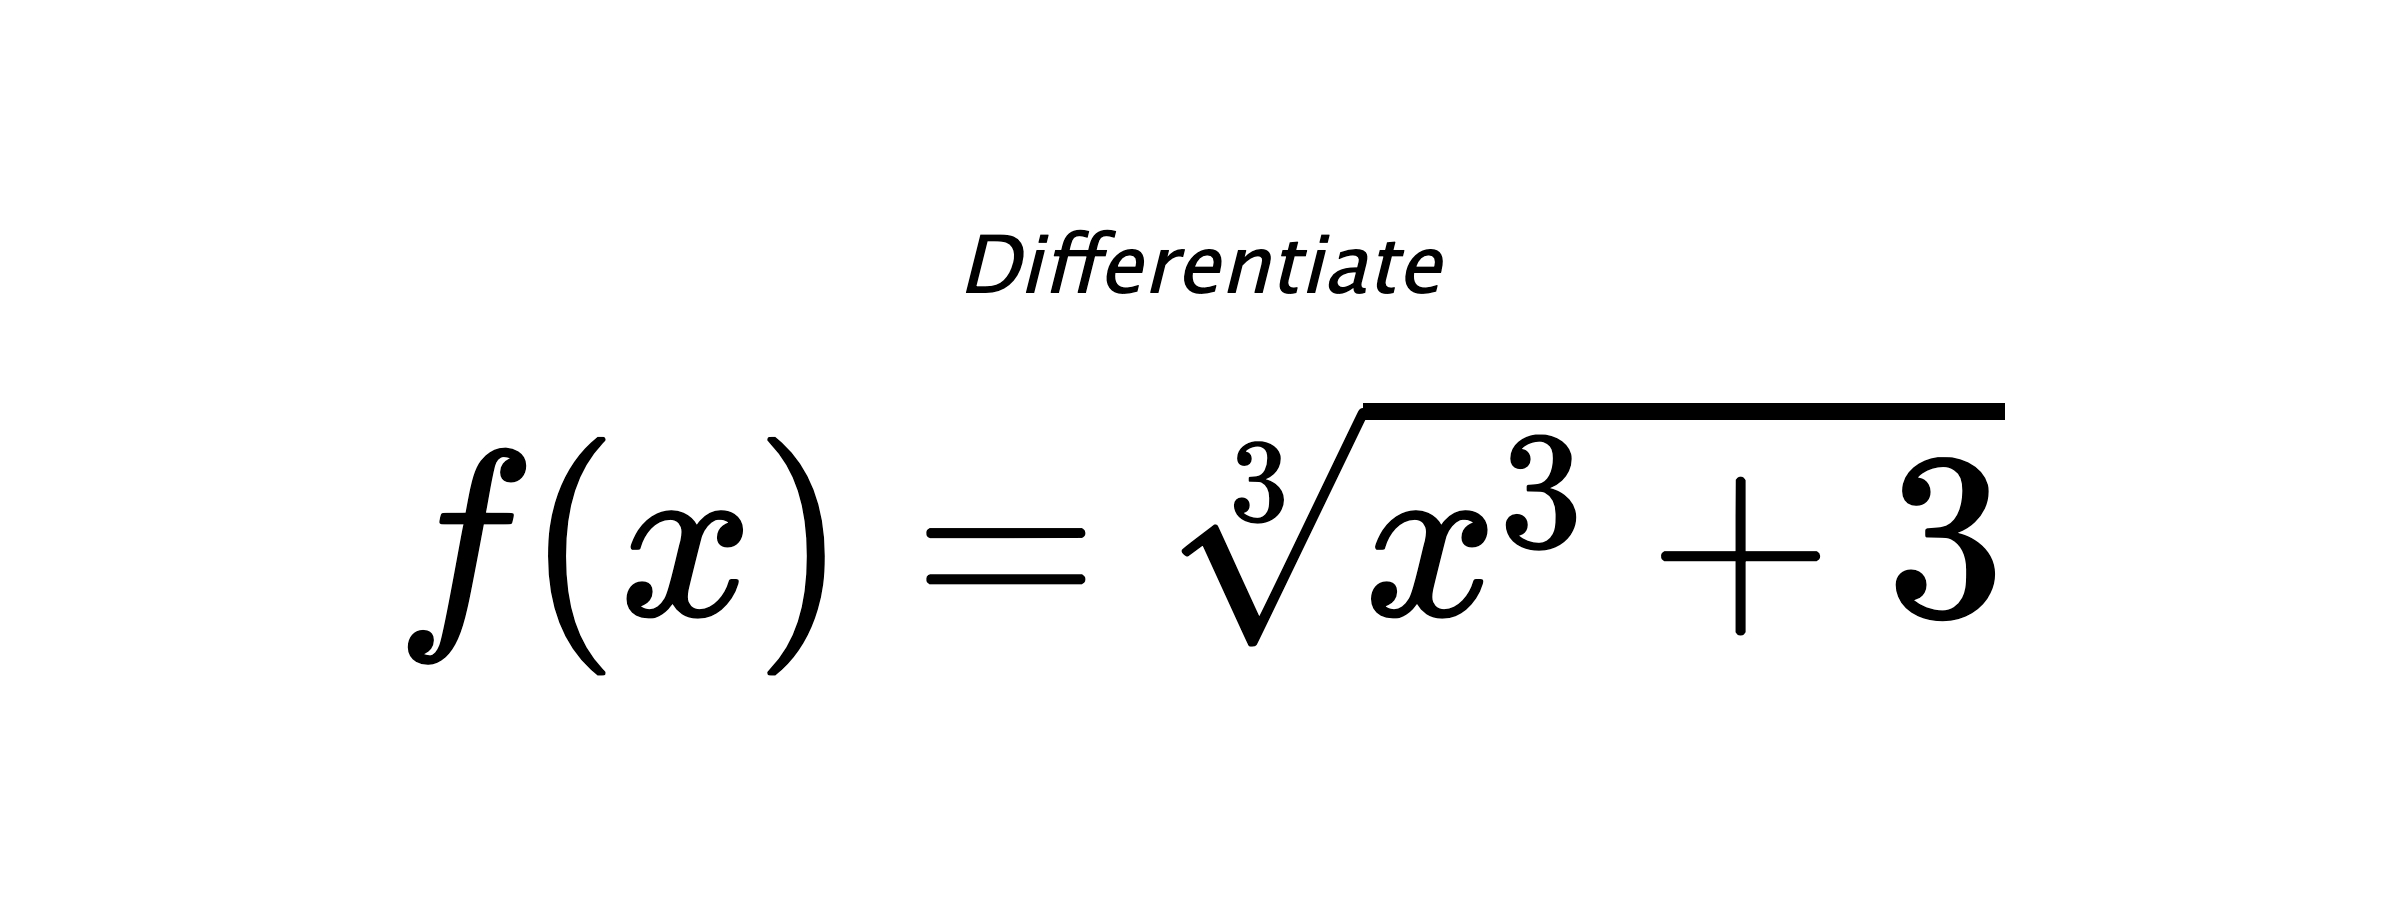 Differentiate $ f(x) = \sqrt[3]{x^{3} + 3} $